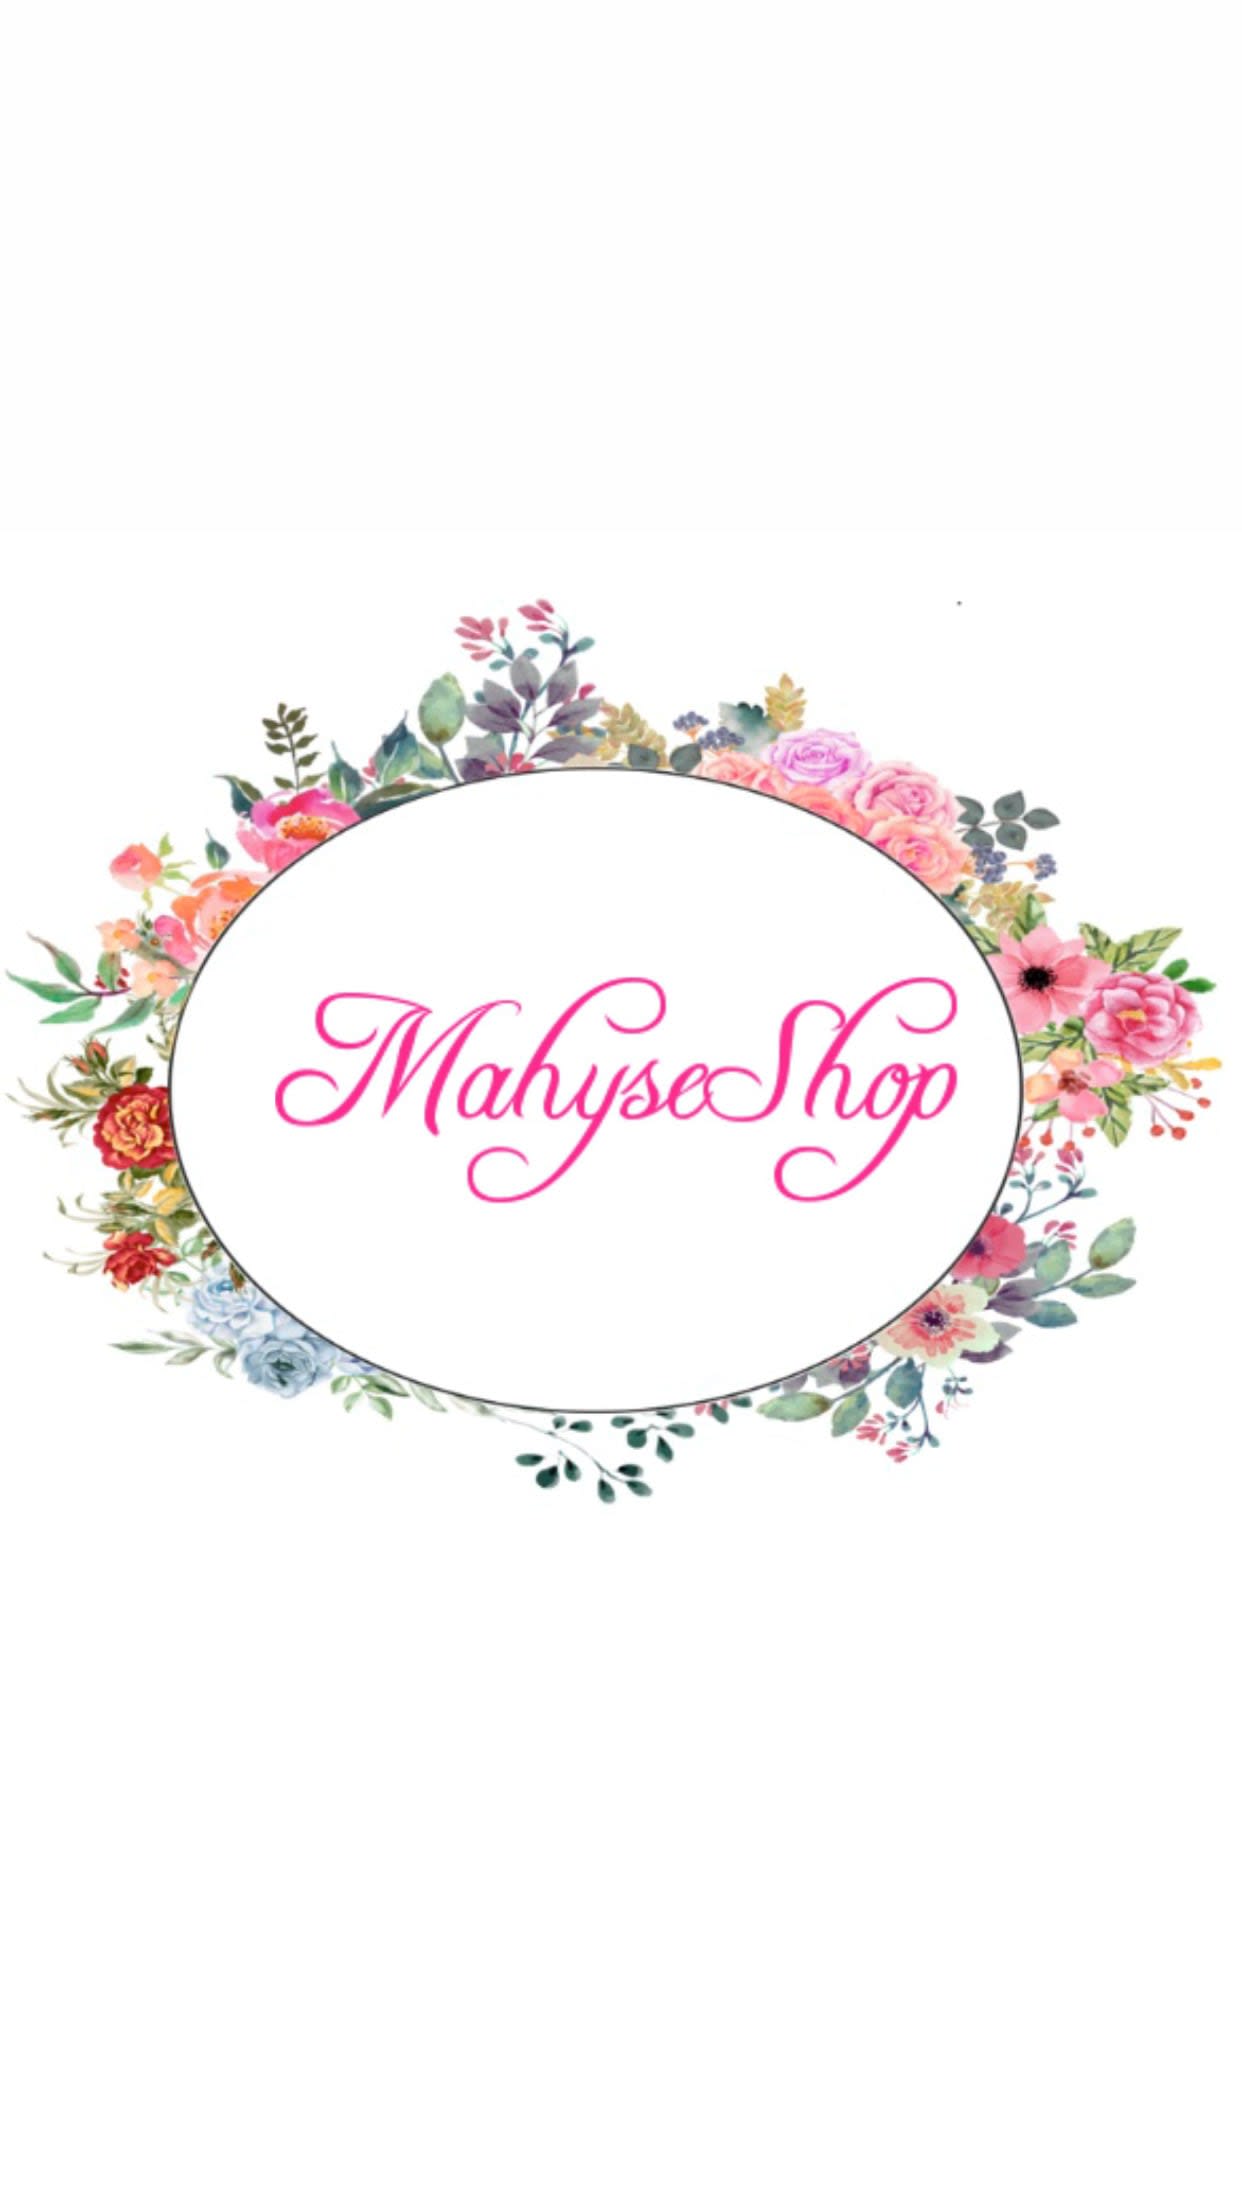 Mahyse Shop